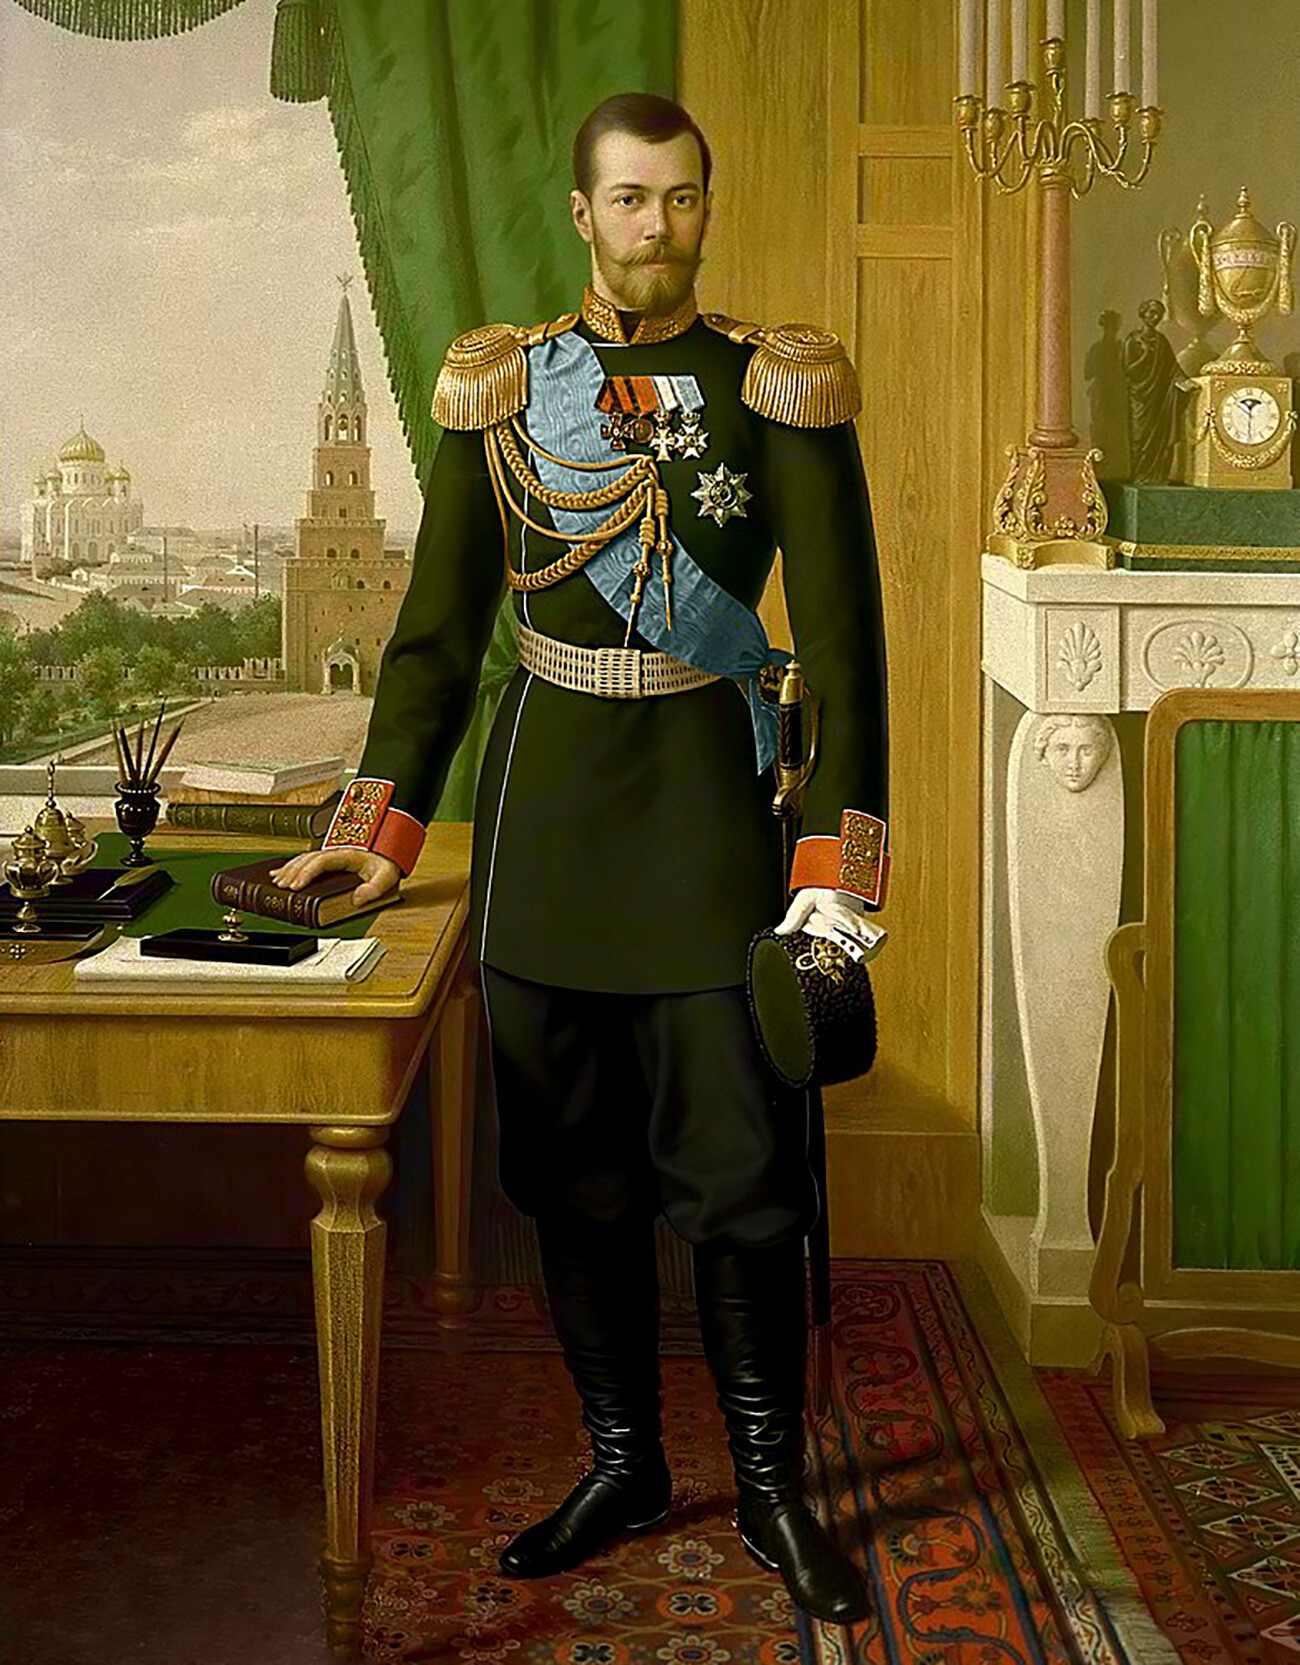 Н. Ф. Яш. Портрет императора Николая II
